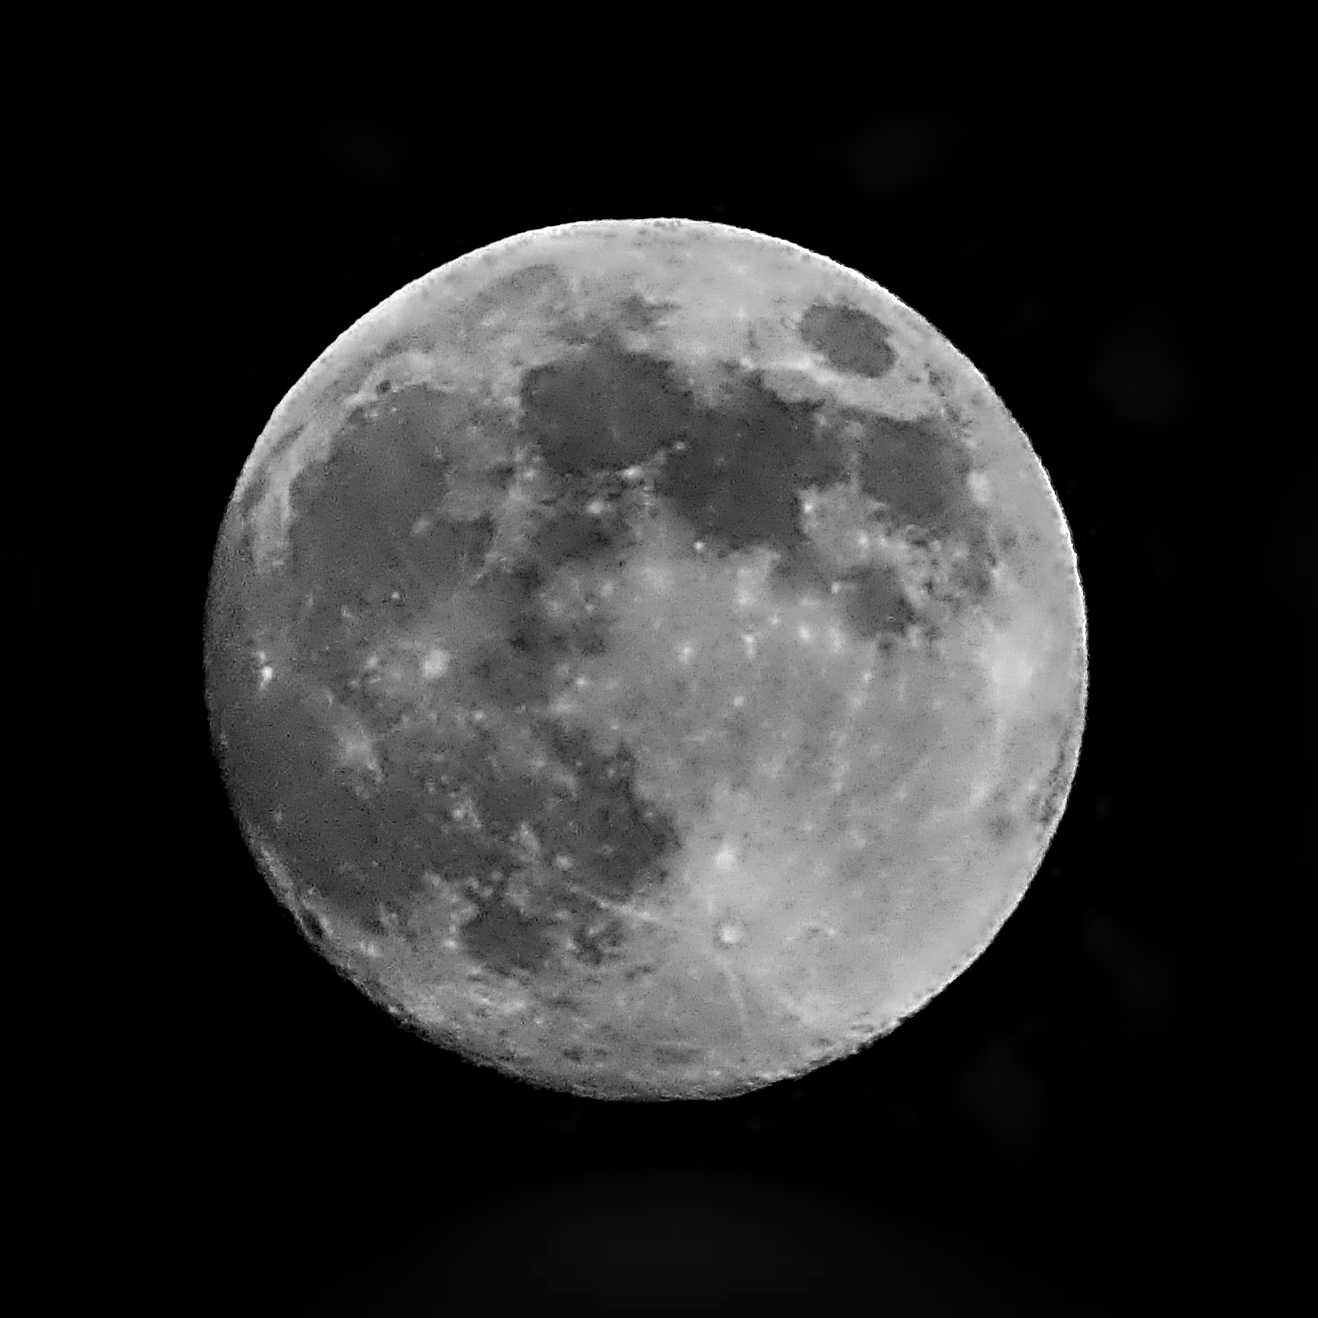 "Full moon on October 10, 2011"